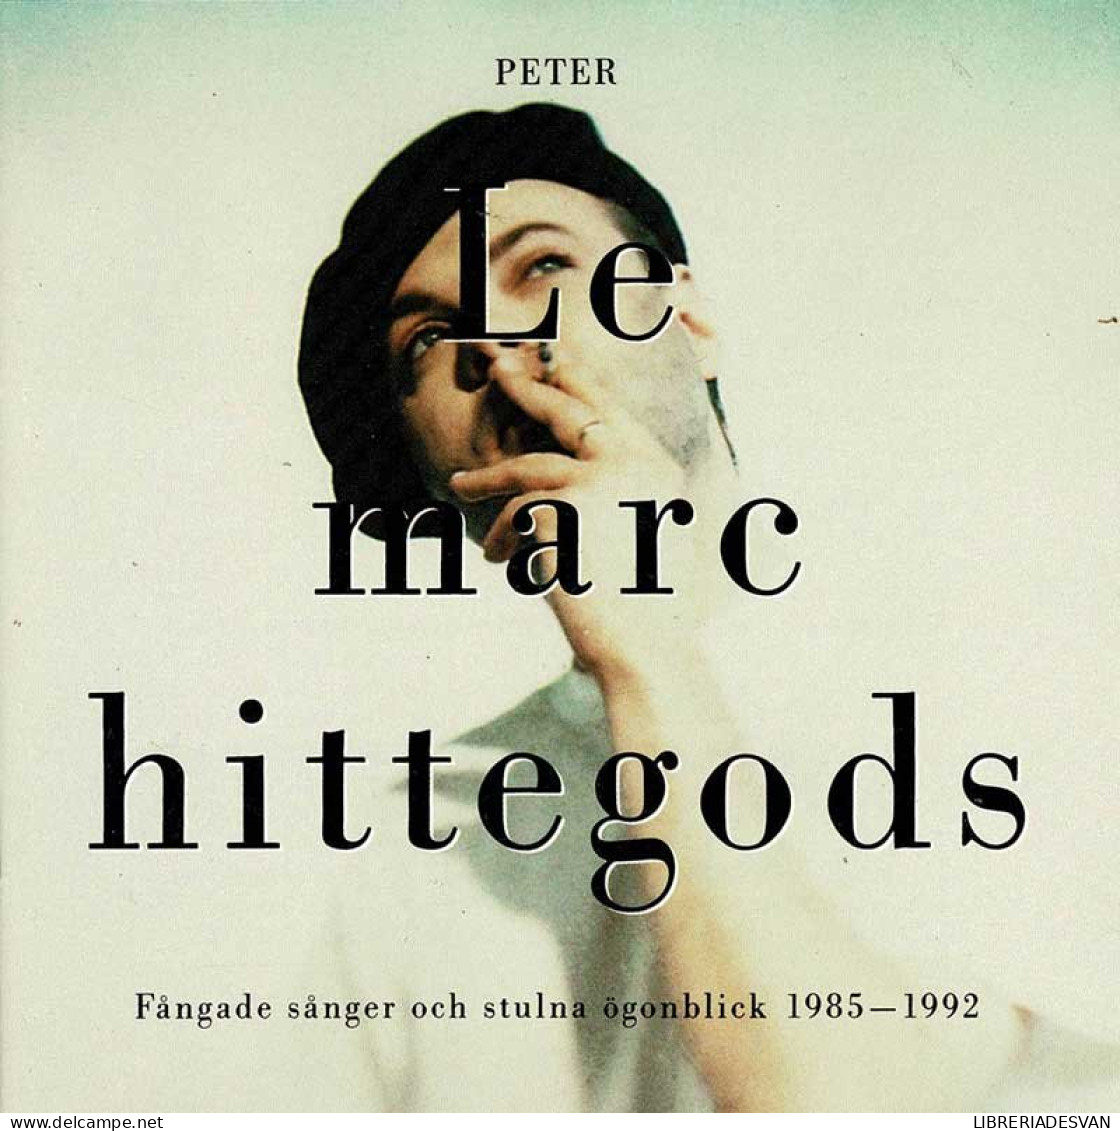 Peter LeMarc - Hittegods - Fangade Sanger Och Stulna Ogonblick 1985-1992. CD - Disco, Pop